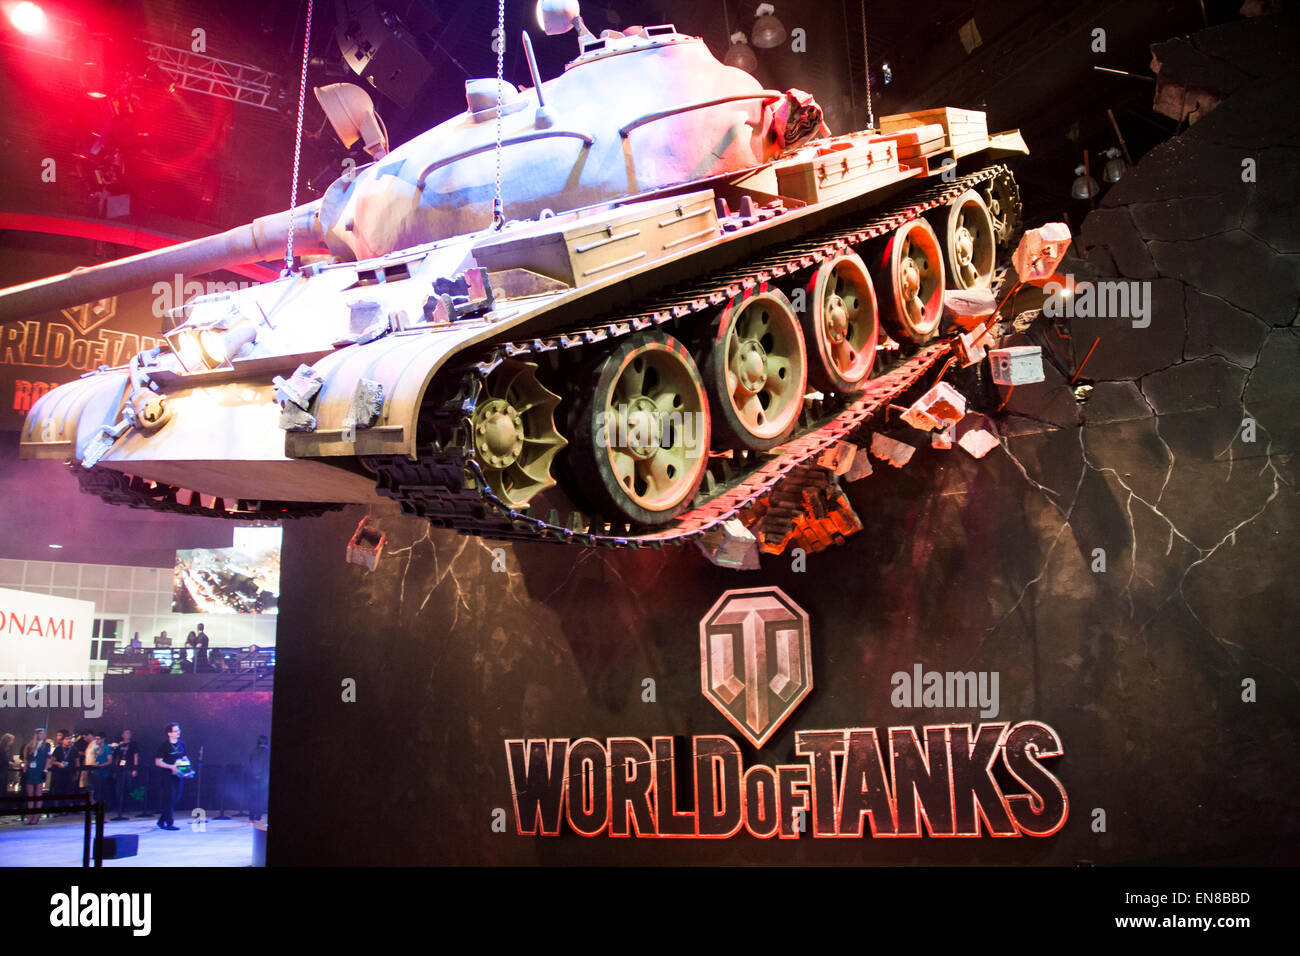 Une réplique grandeur nature d'une guerre mondiale 2 réservoir depuis le jeu vidéo World of Tanks est suspendu au plafond à l'E3 2014. Banque D'Images